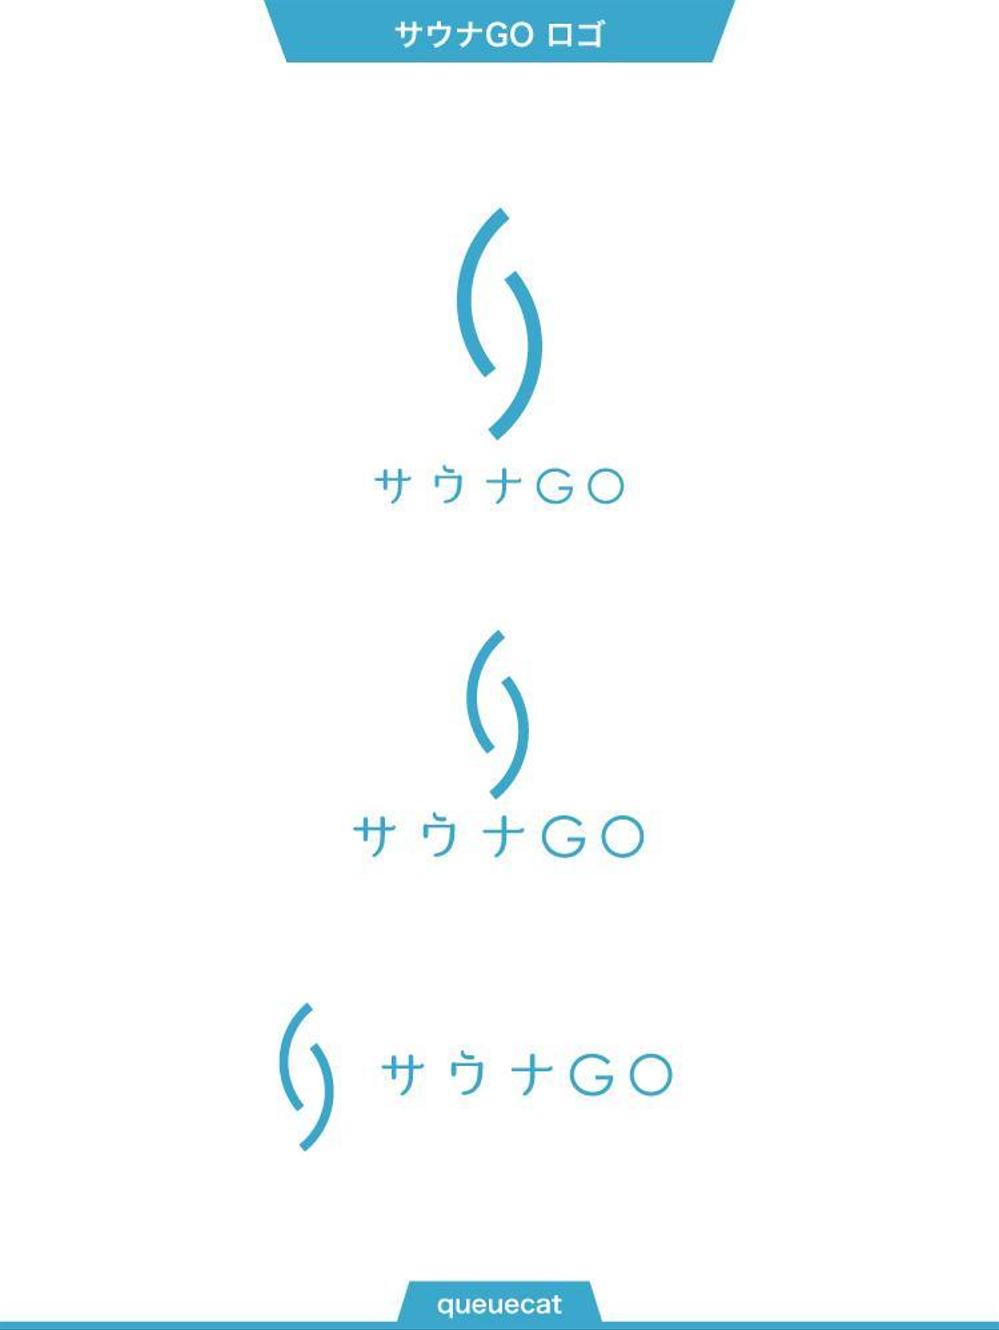 サウナキュレーションサイト「サウナGO」のロゴ